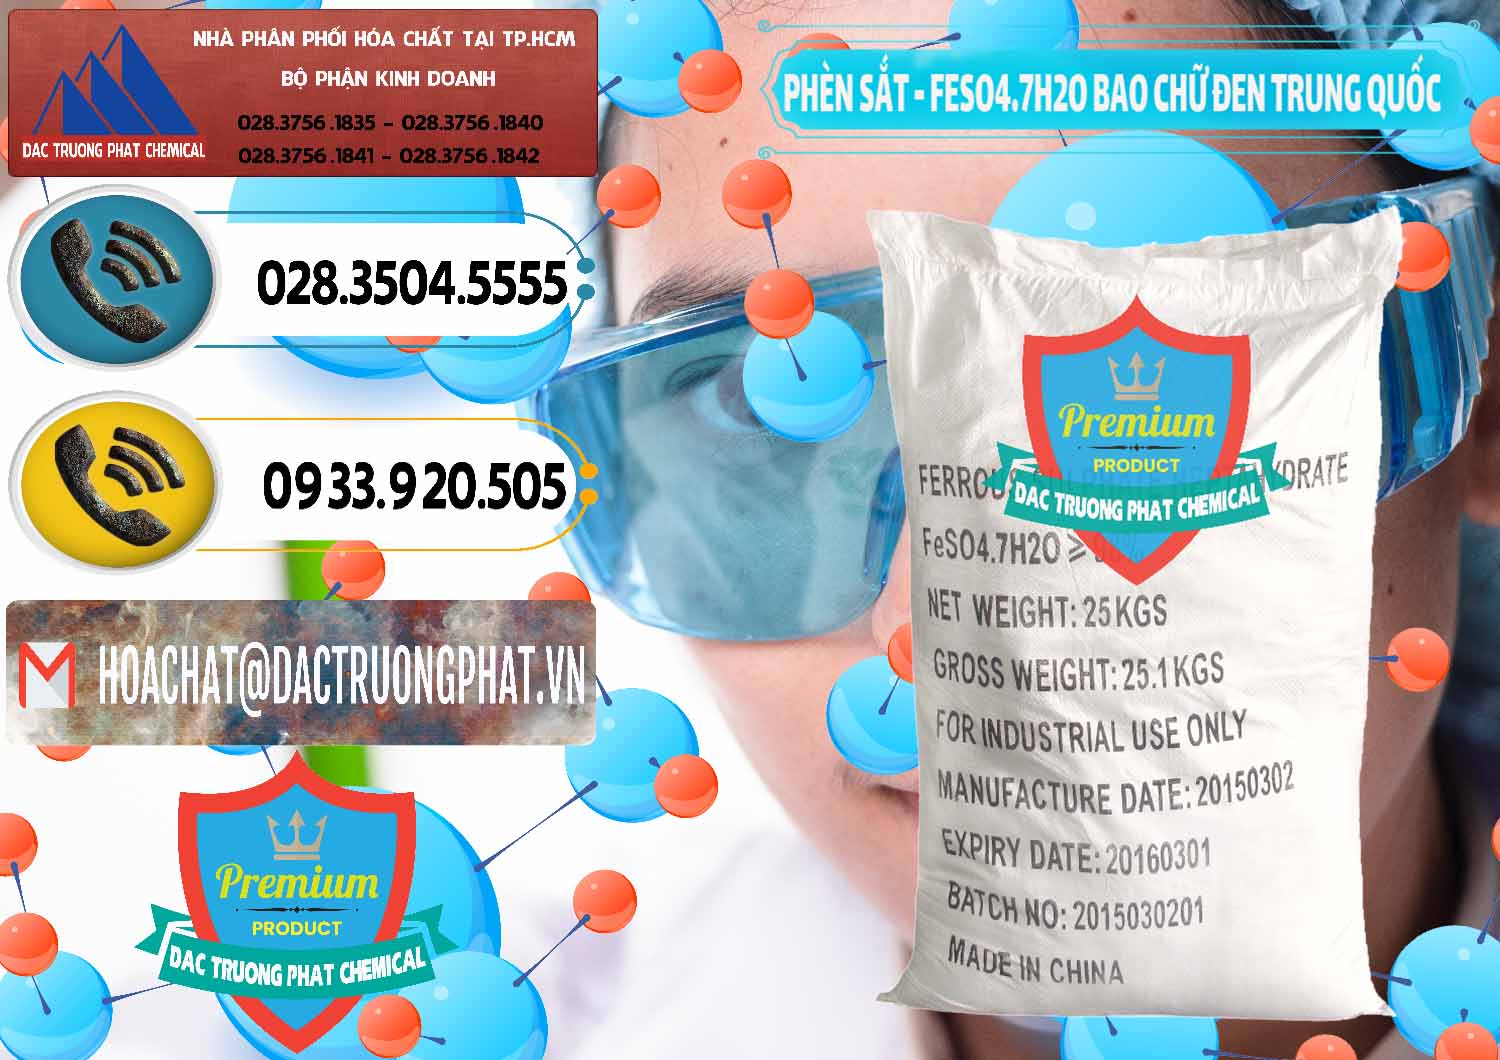 Nơi chuyên bán & cung cấp Phèn Sắt - FeSO4.7H2O Bao Chữ Đen Trung Quốc China - 0234 - Nơi cung cấp - phân phối hóa chất tại TP.HCM - hoachatdetnhuom.vn